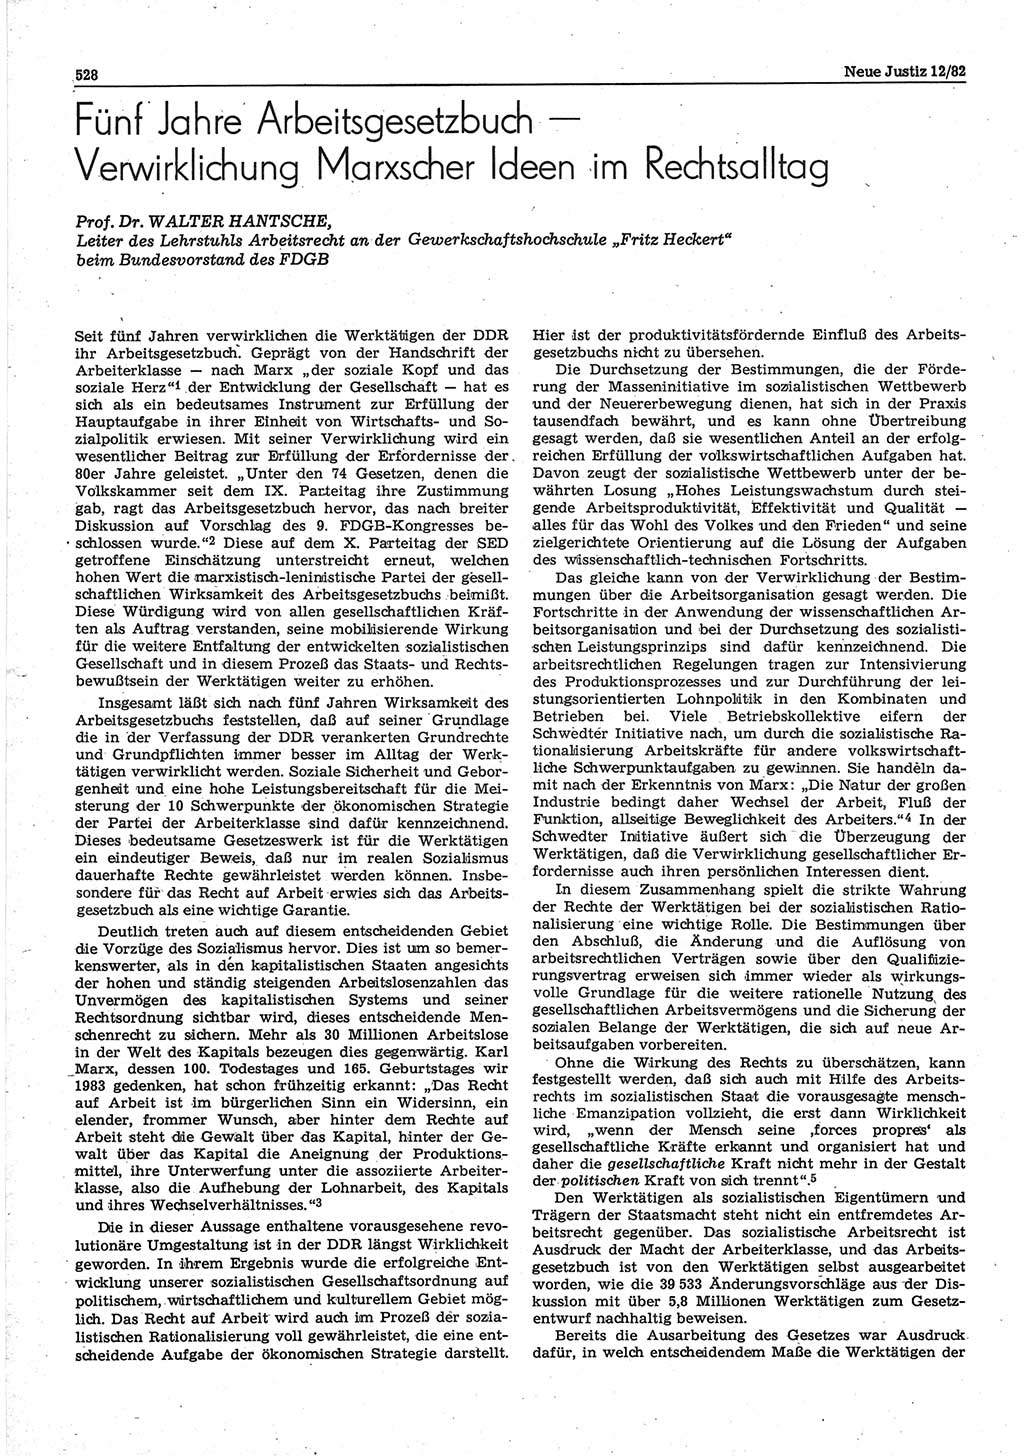 Neue Justiz (NJ), Zeitschrift für sozialistisches Recht und Gesetzlichkeit [Deutsche Demokratische Republik (DDR)], 36. Jahrgang 1982, Seite 528 (NJ DDR 1982, S. 528)